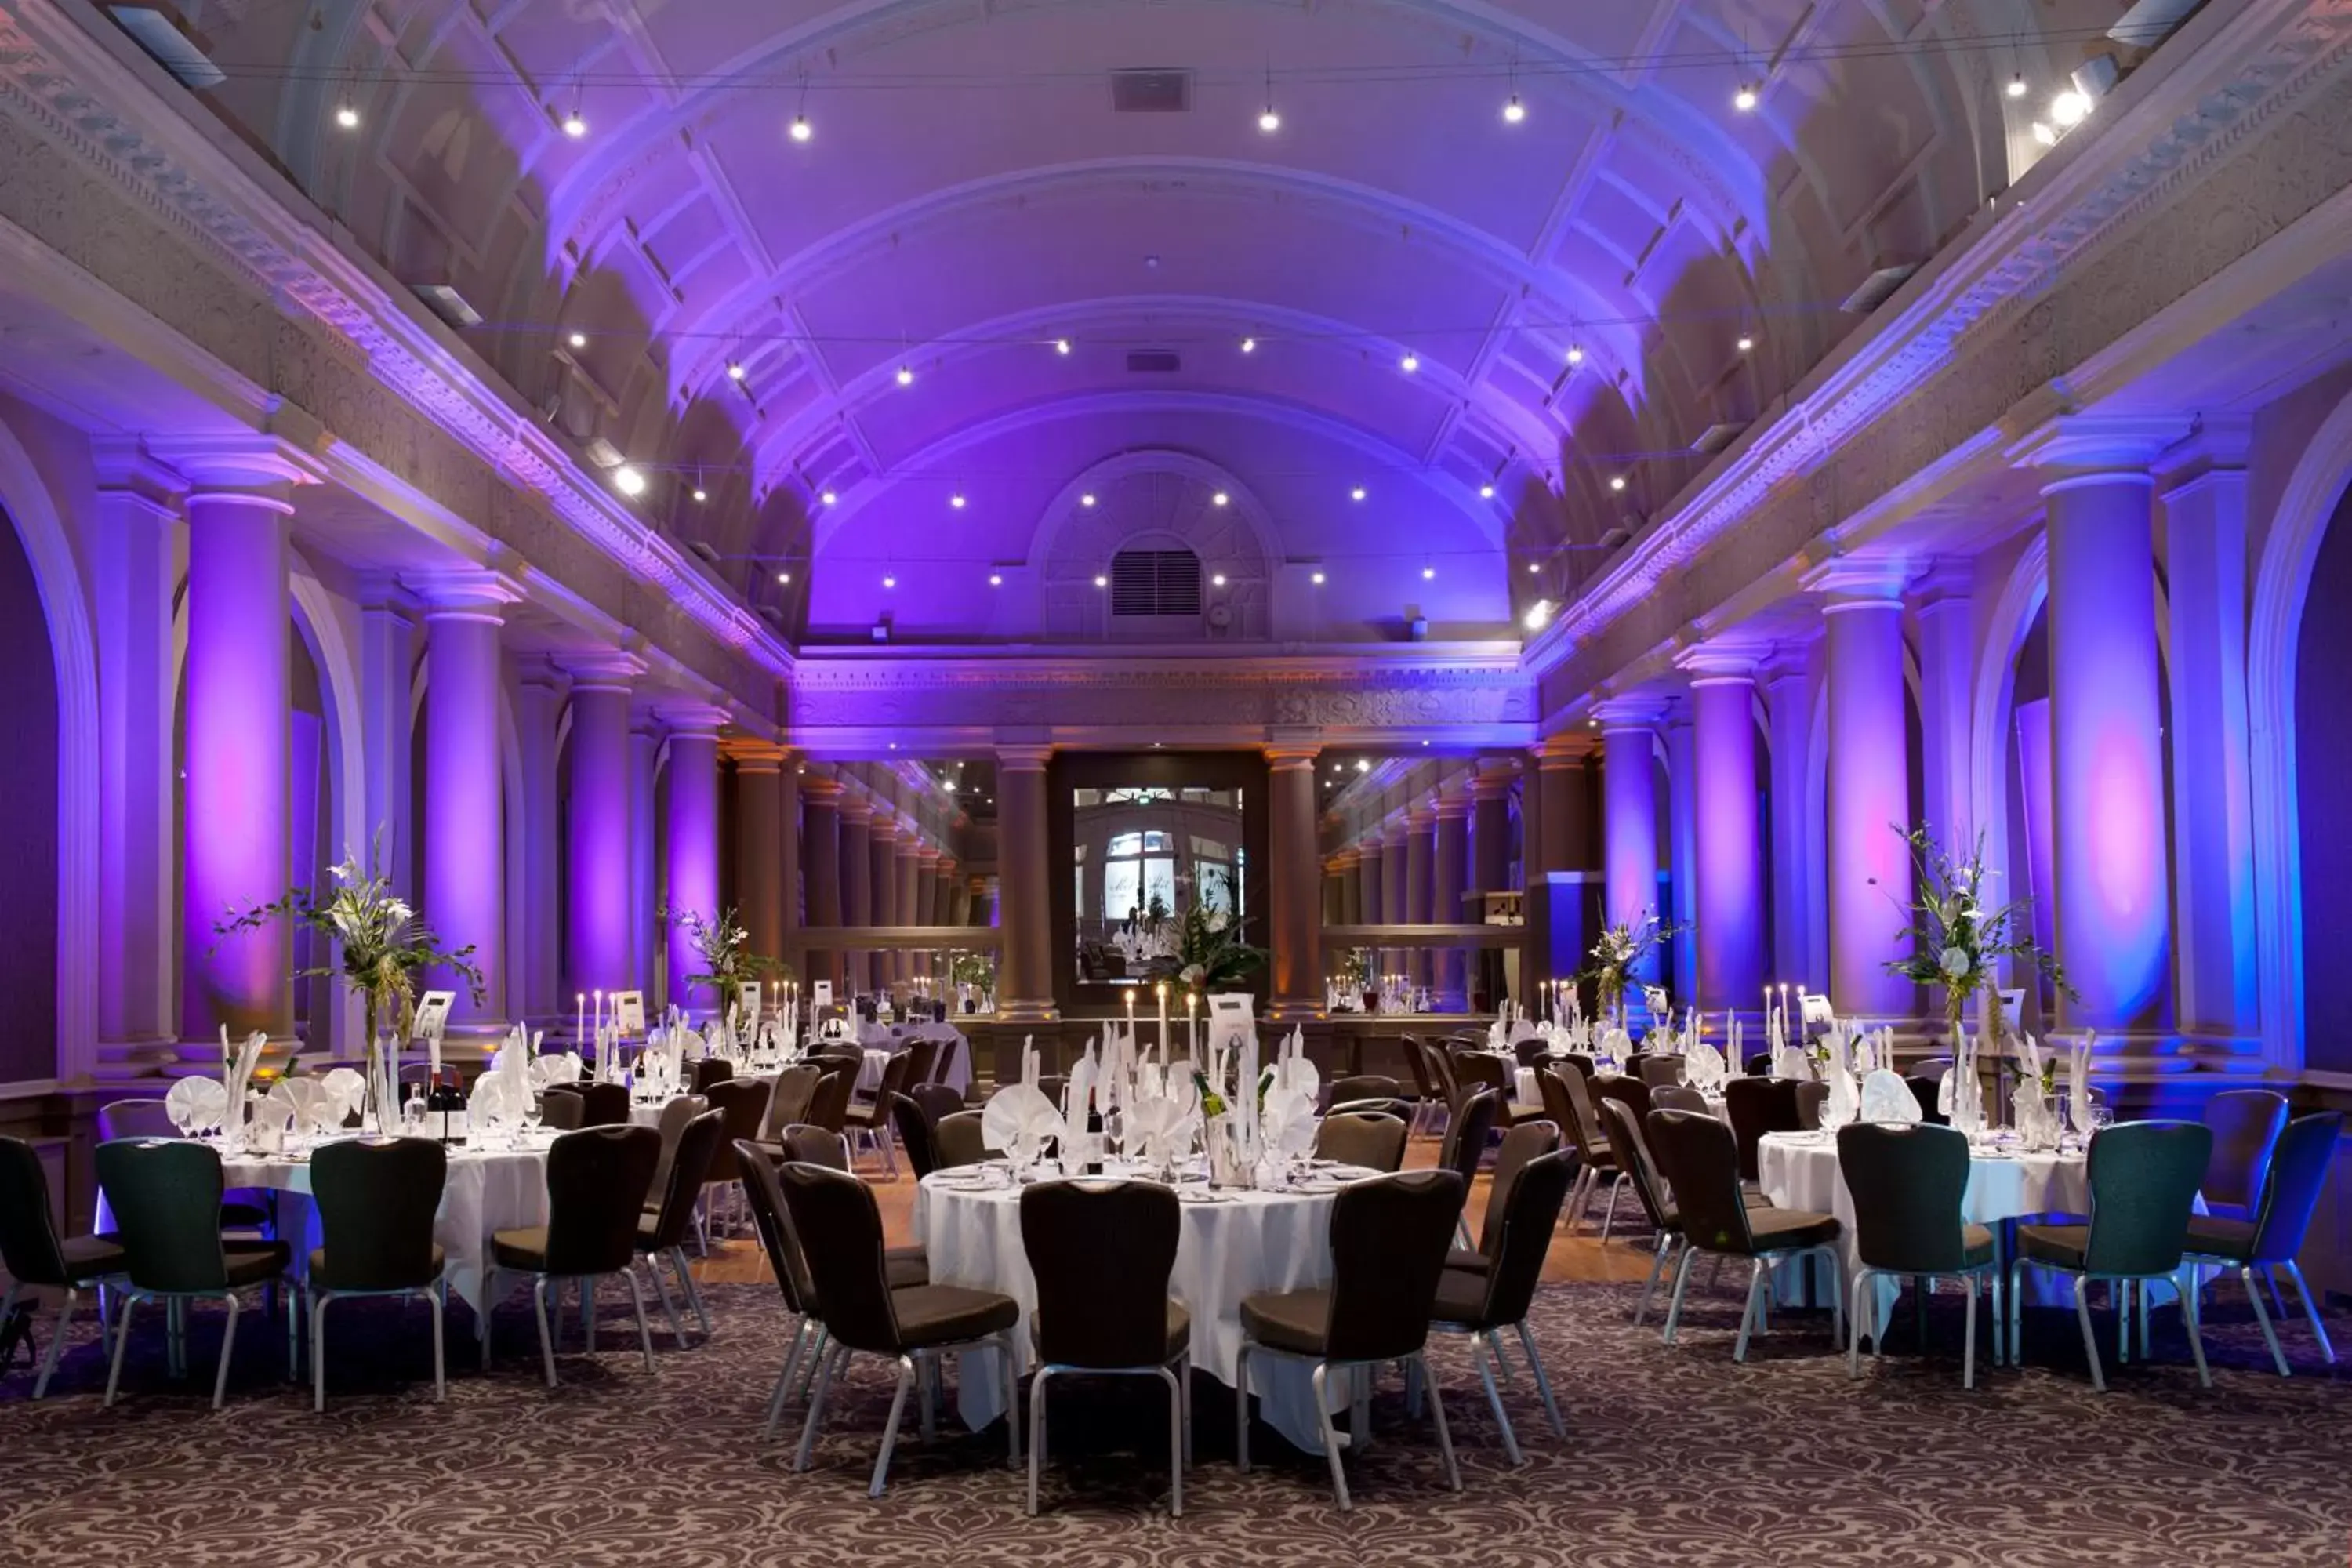 Banquet/Function facilities, Banquet Facilities in The Met Hotel Leeds